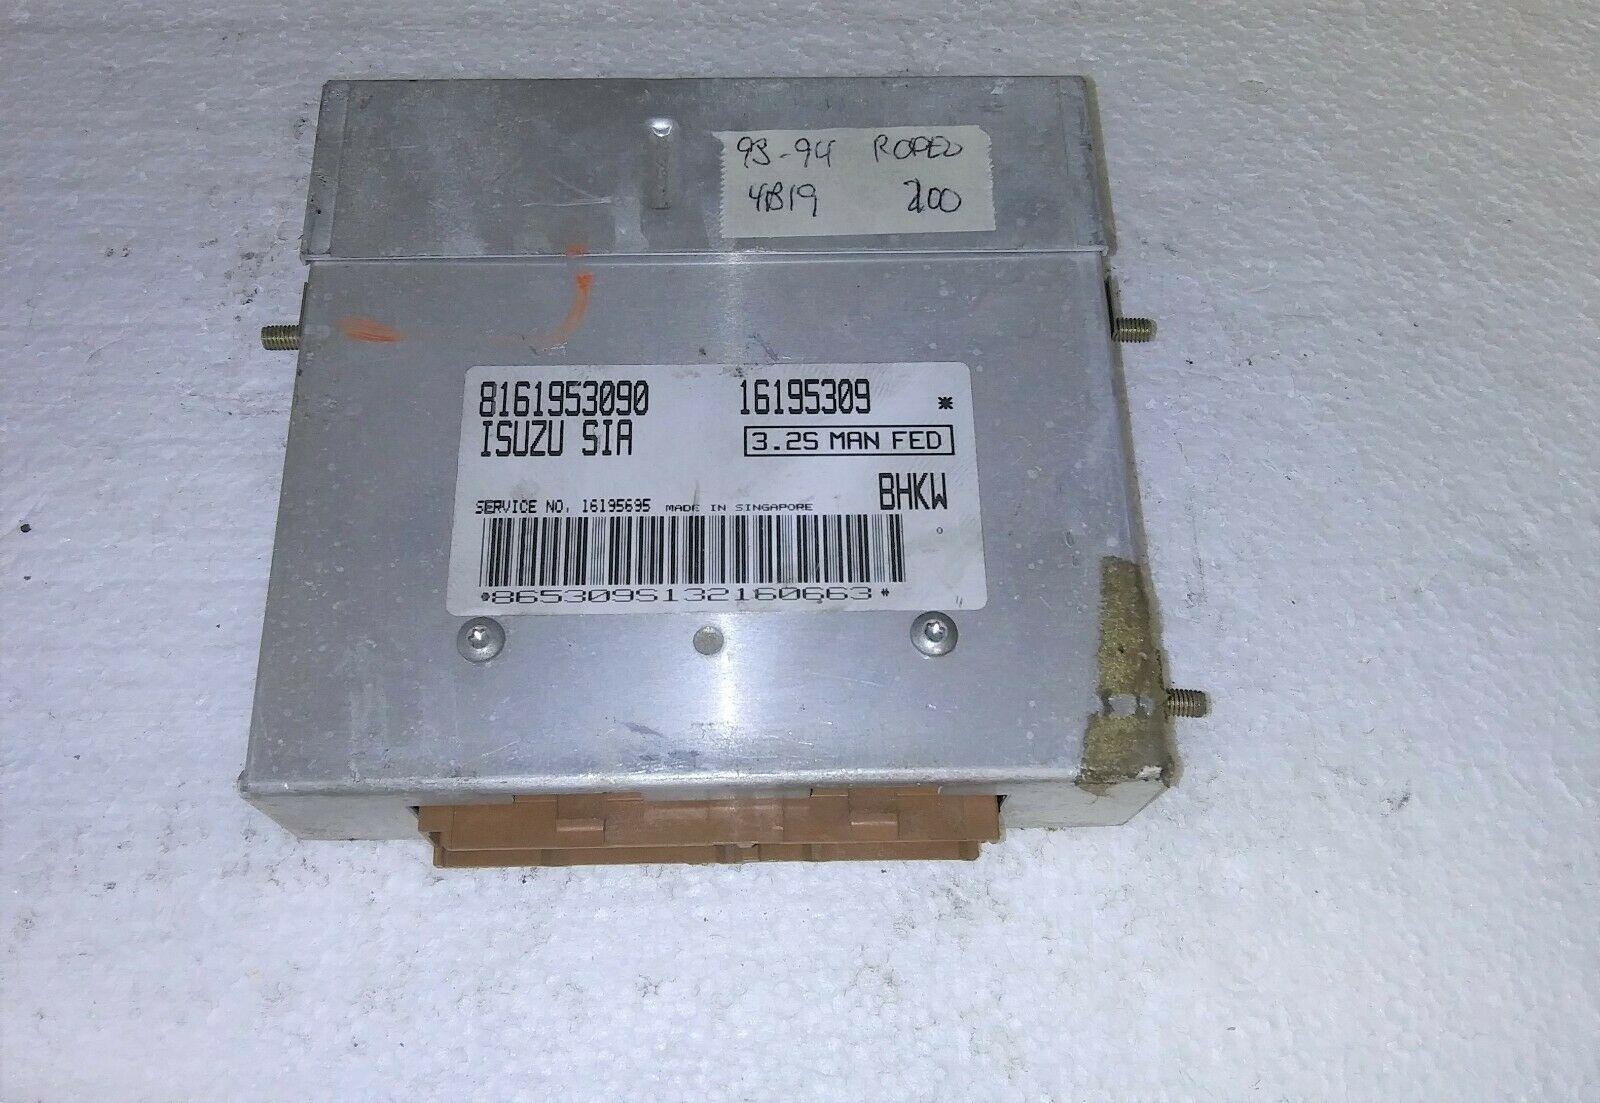 1993-1994 Isuzu Rodeo ecm ecu computer 8161953090.